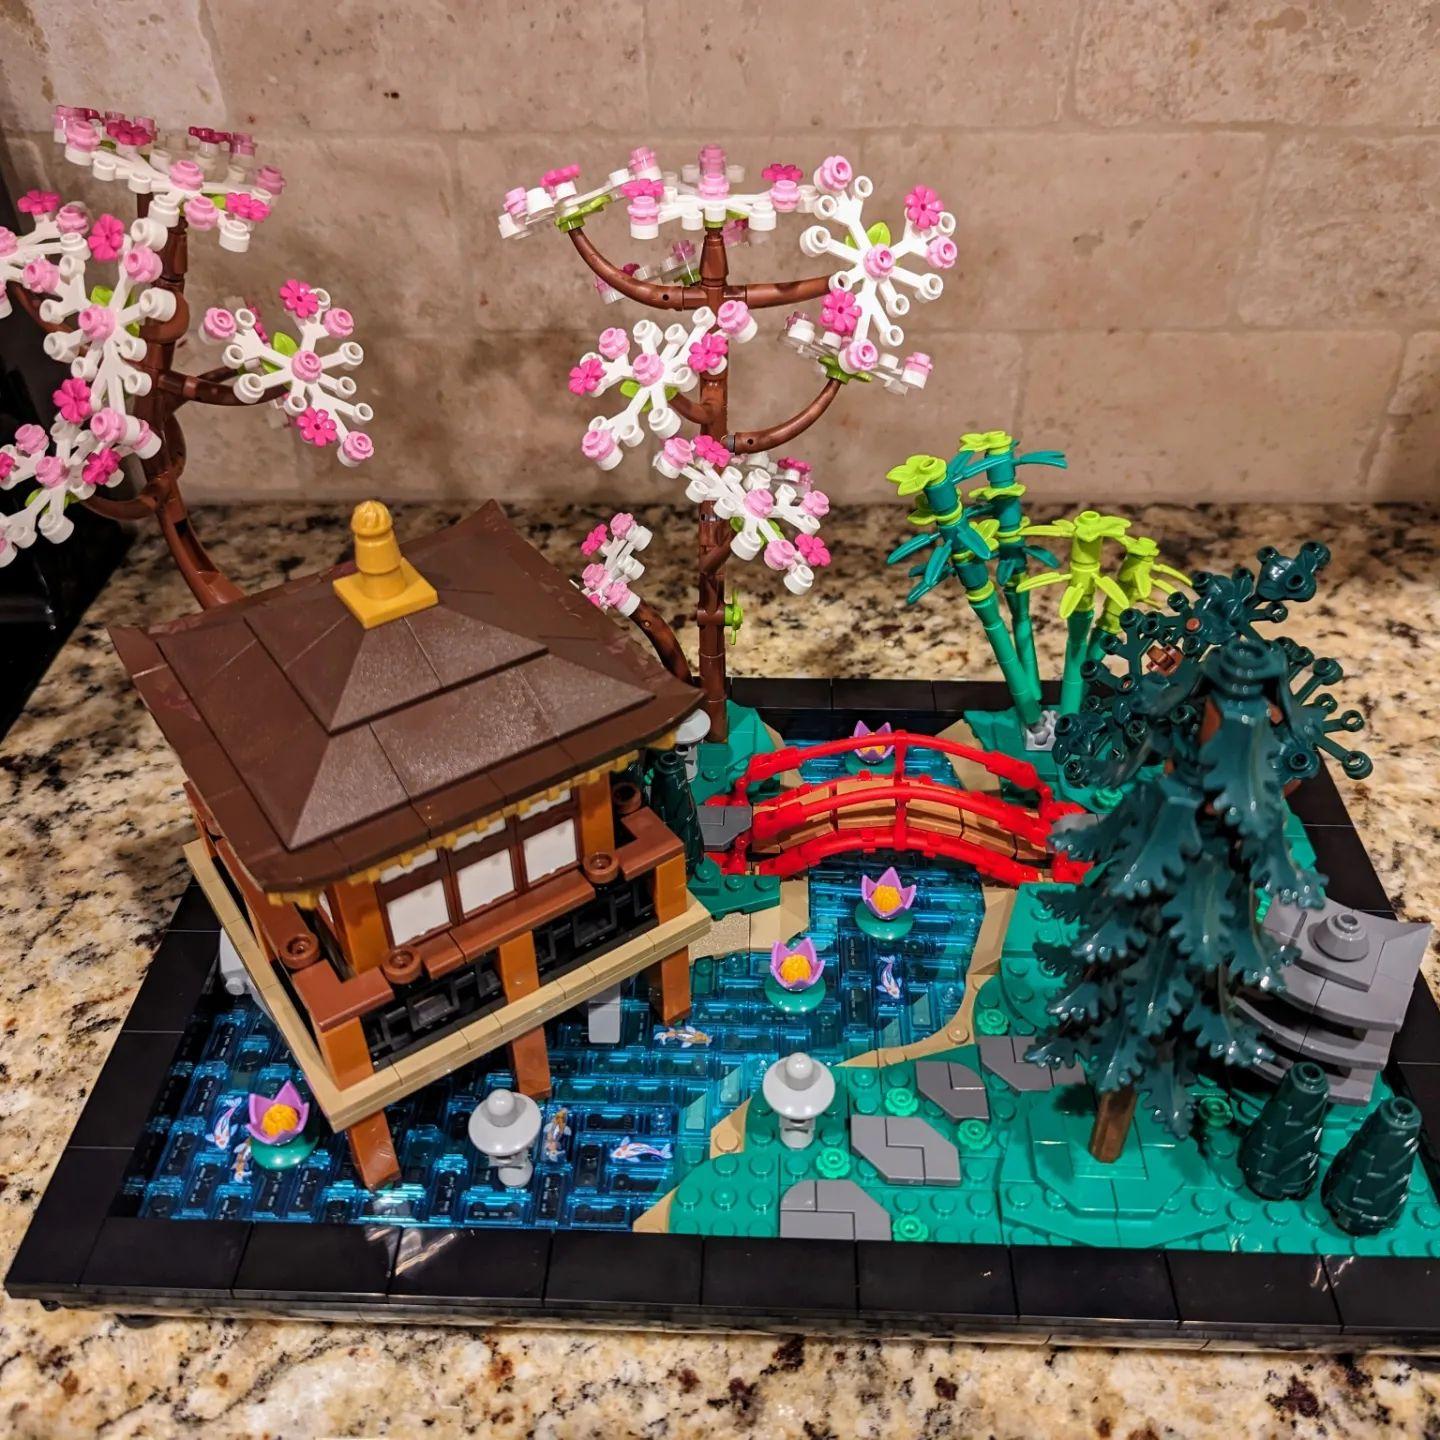 Lego®icons 10315 - le jardin paisible, jeux de constructions & maquettes